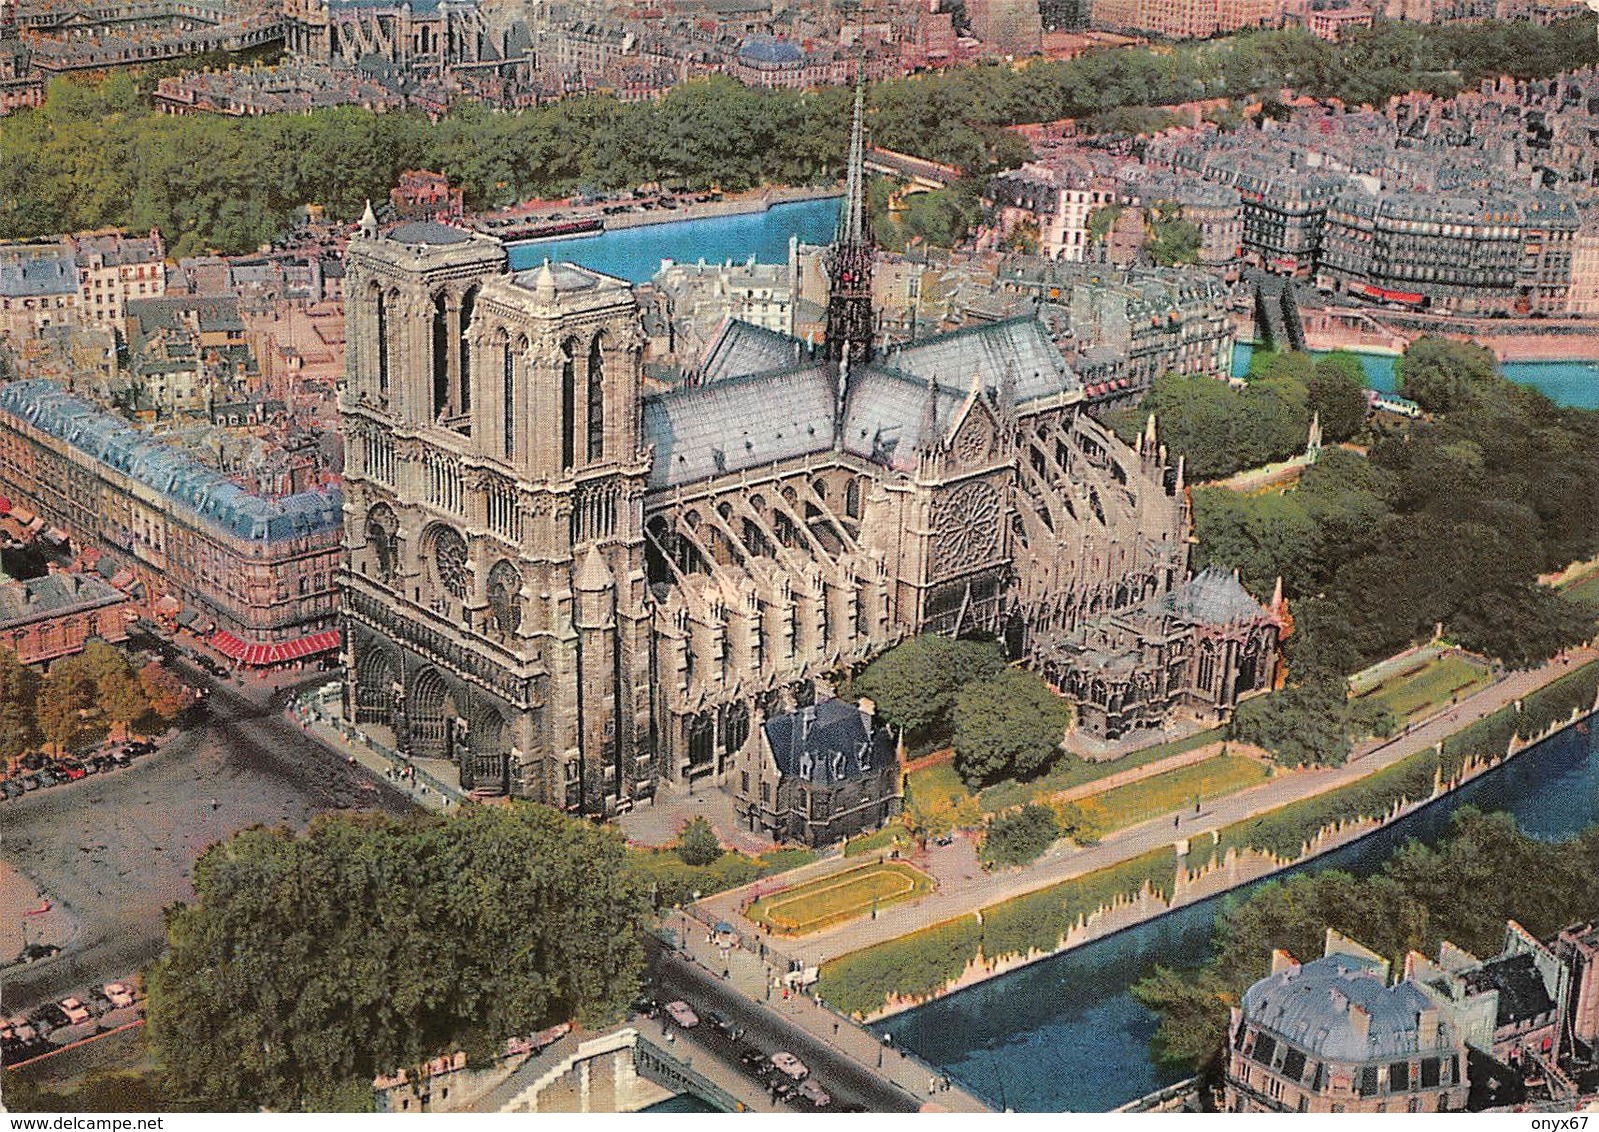 Carte GRAND FORMAT PARIS-75-Cathédrale Notre-Dame 1163-1260-Flèche Brulée 15-04-2019-Eglise-Religion - Kerken